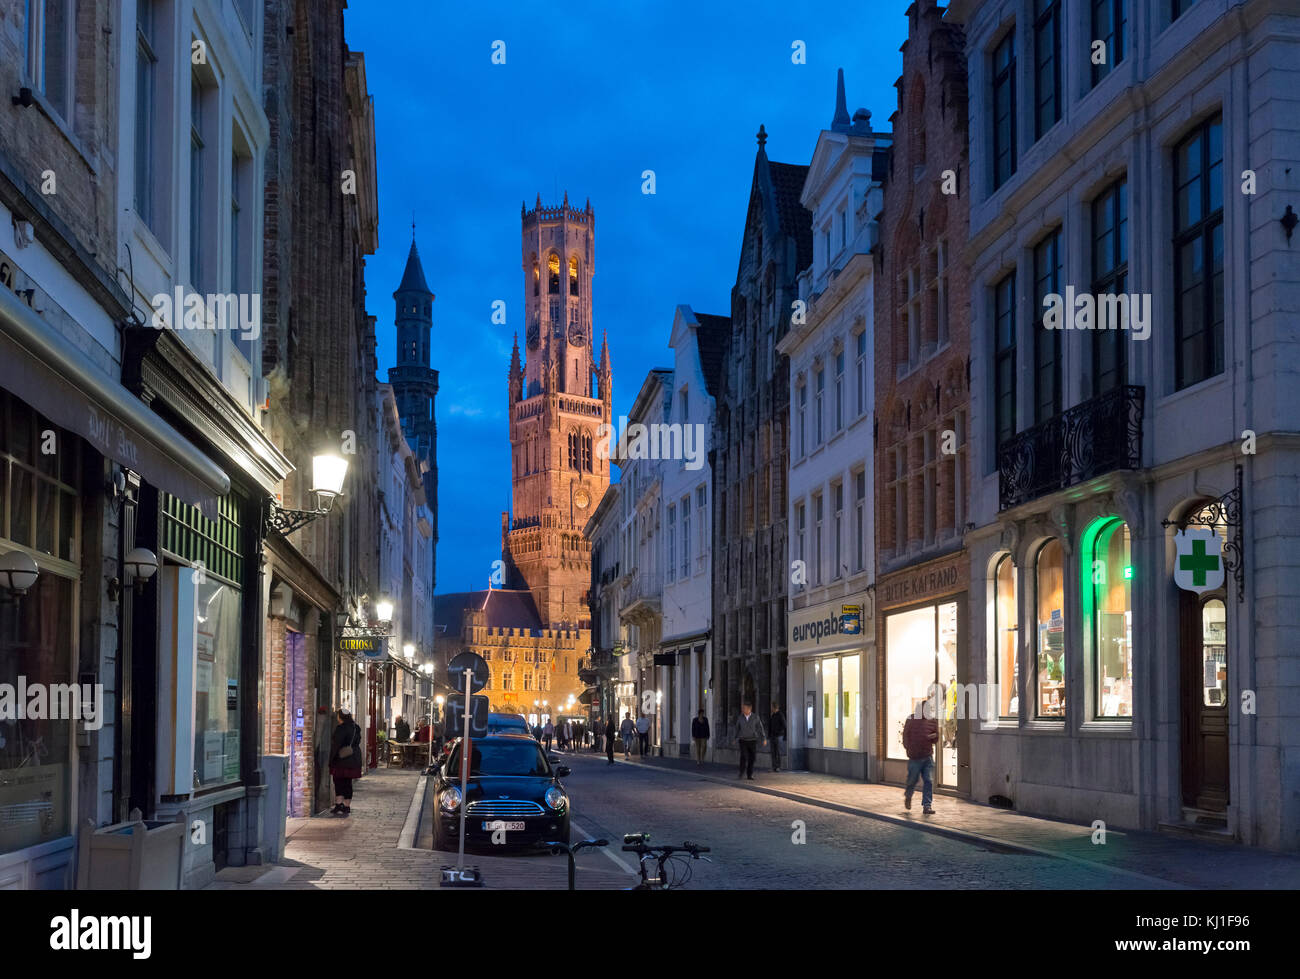 Vlamingstraat en regardant vers le beffroi de Bruges (Belfort van Brugge) dans la place du marché (Markt), Bruges (Brugge), Belgique Banque D'Images